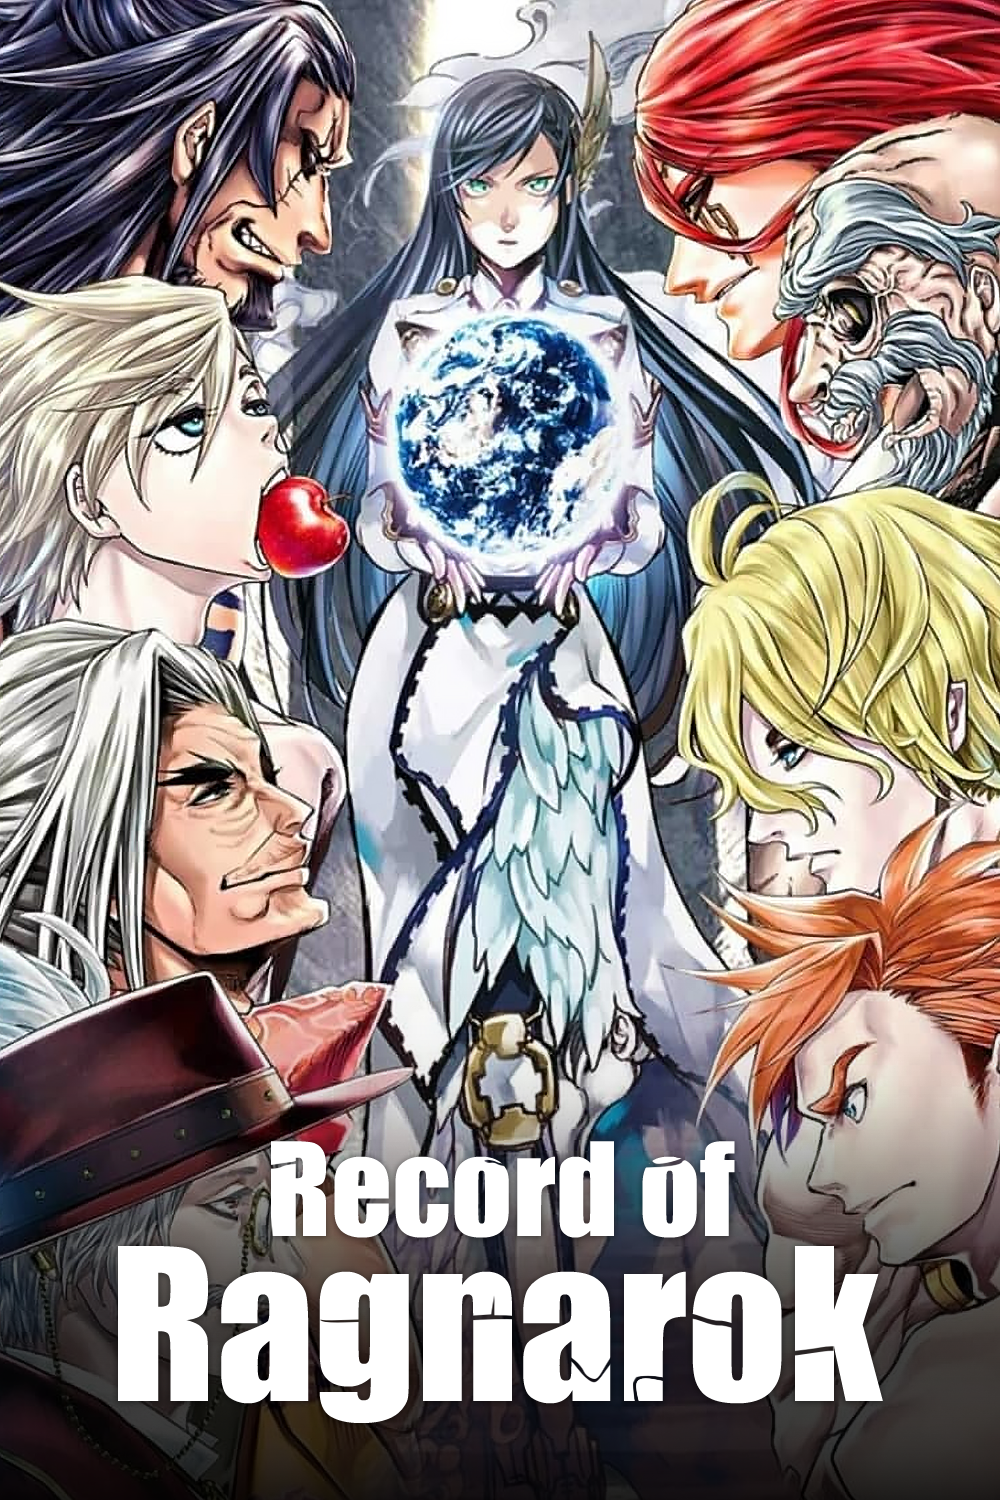 Buy ragnarok online - 38258, Premium Anime Poster